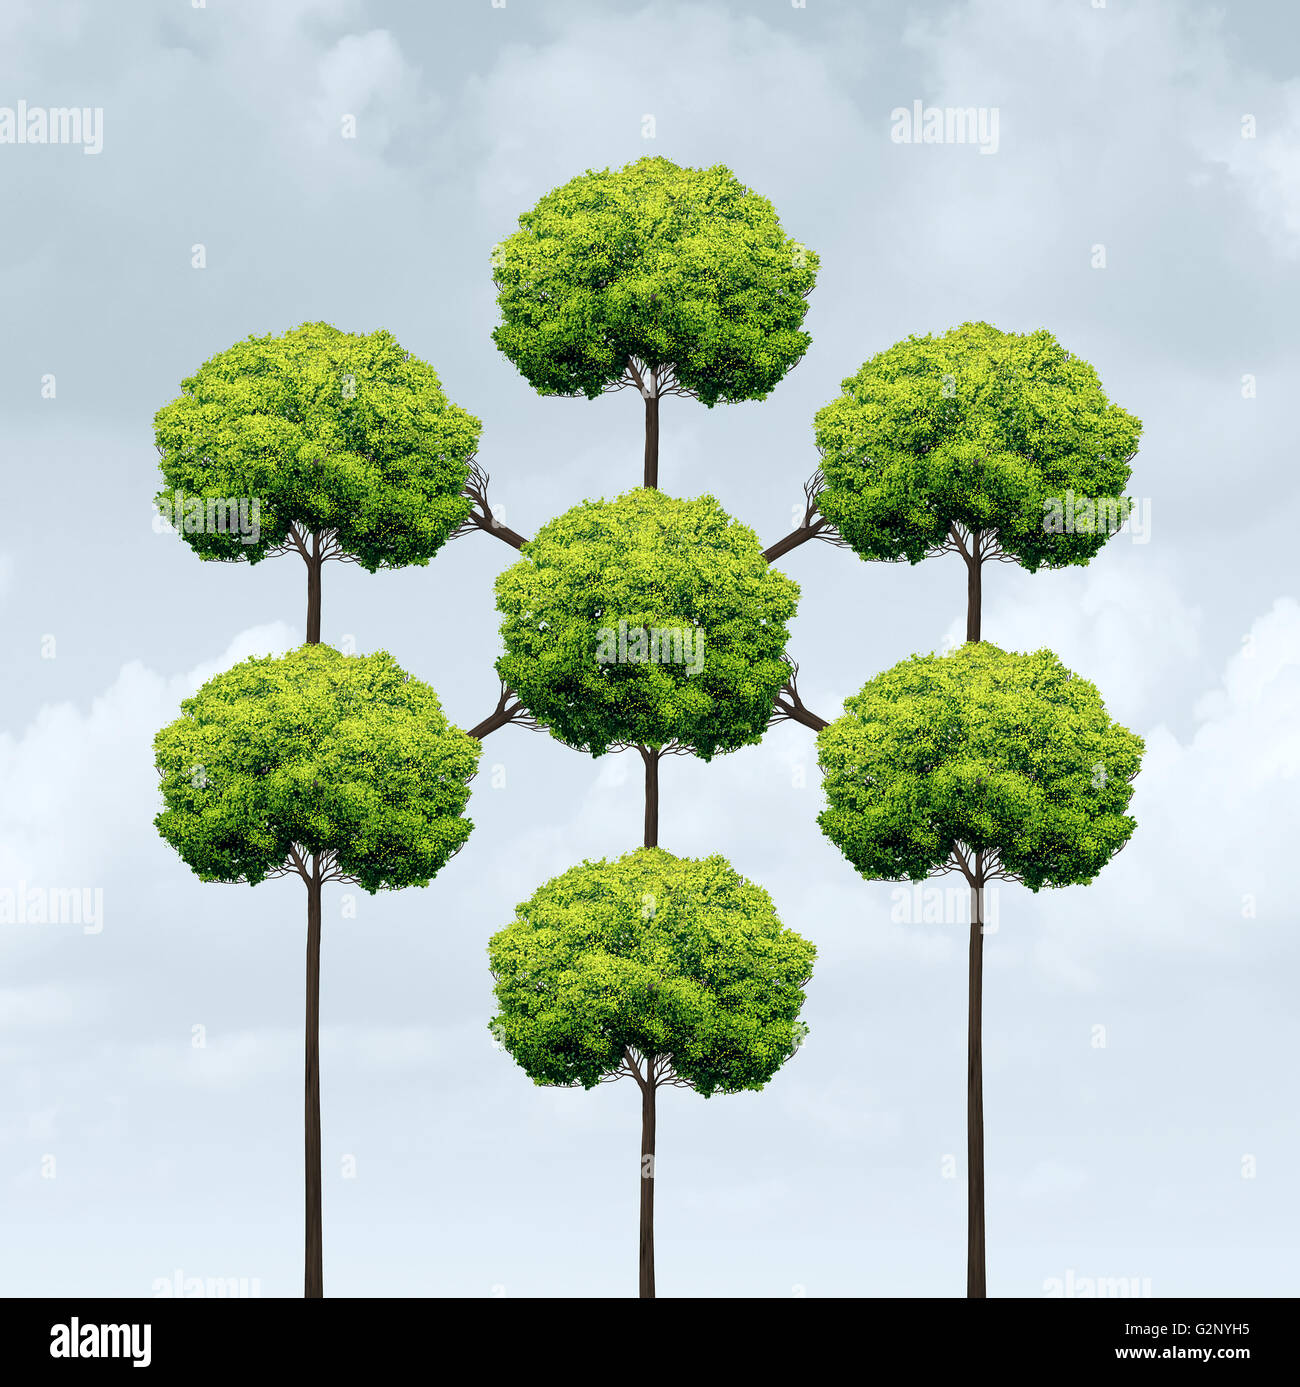 Concept de mise en réseau ou réseau social et croissance symbole système connecté sur le web et l'internet comme un groupe d'arbres liées togerher dans un style 3D illustration. Banque D'Images